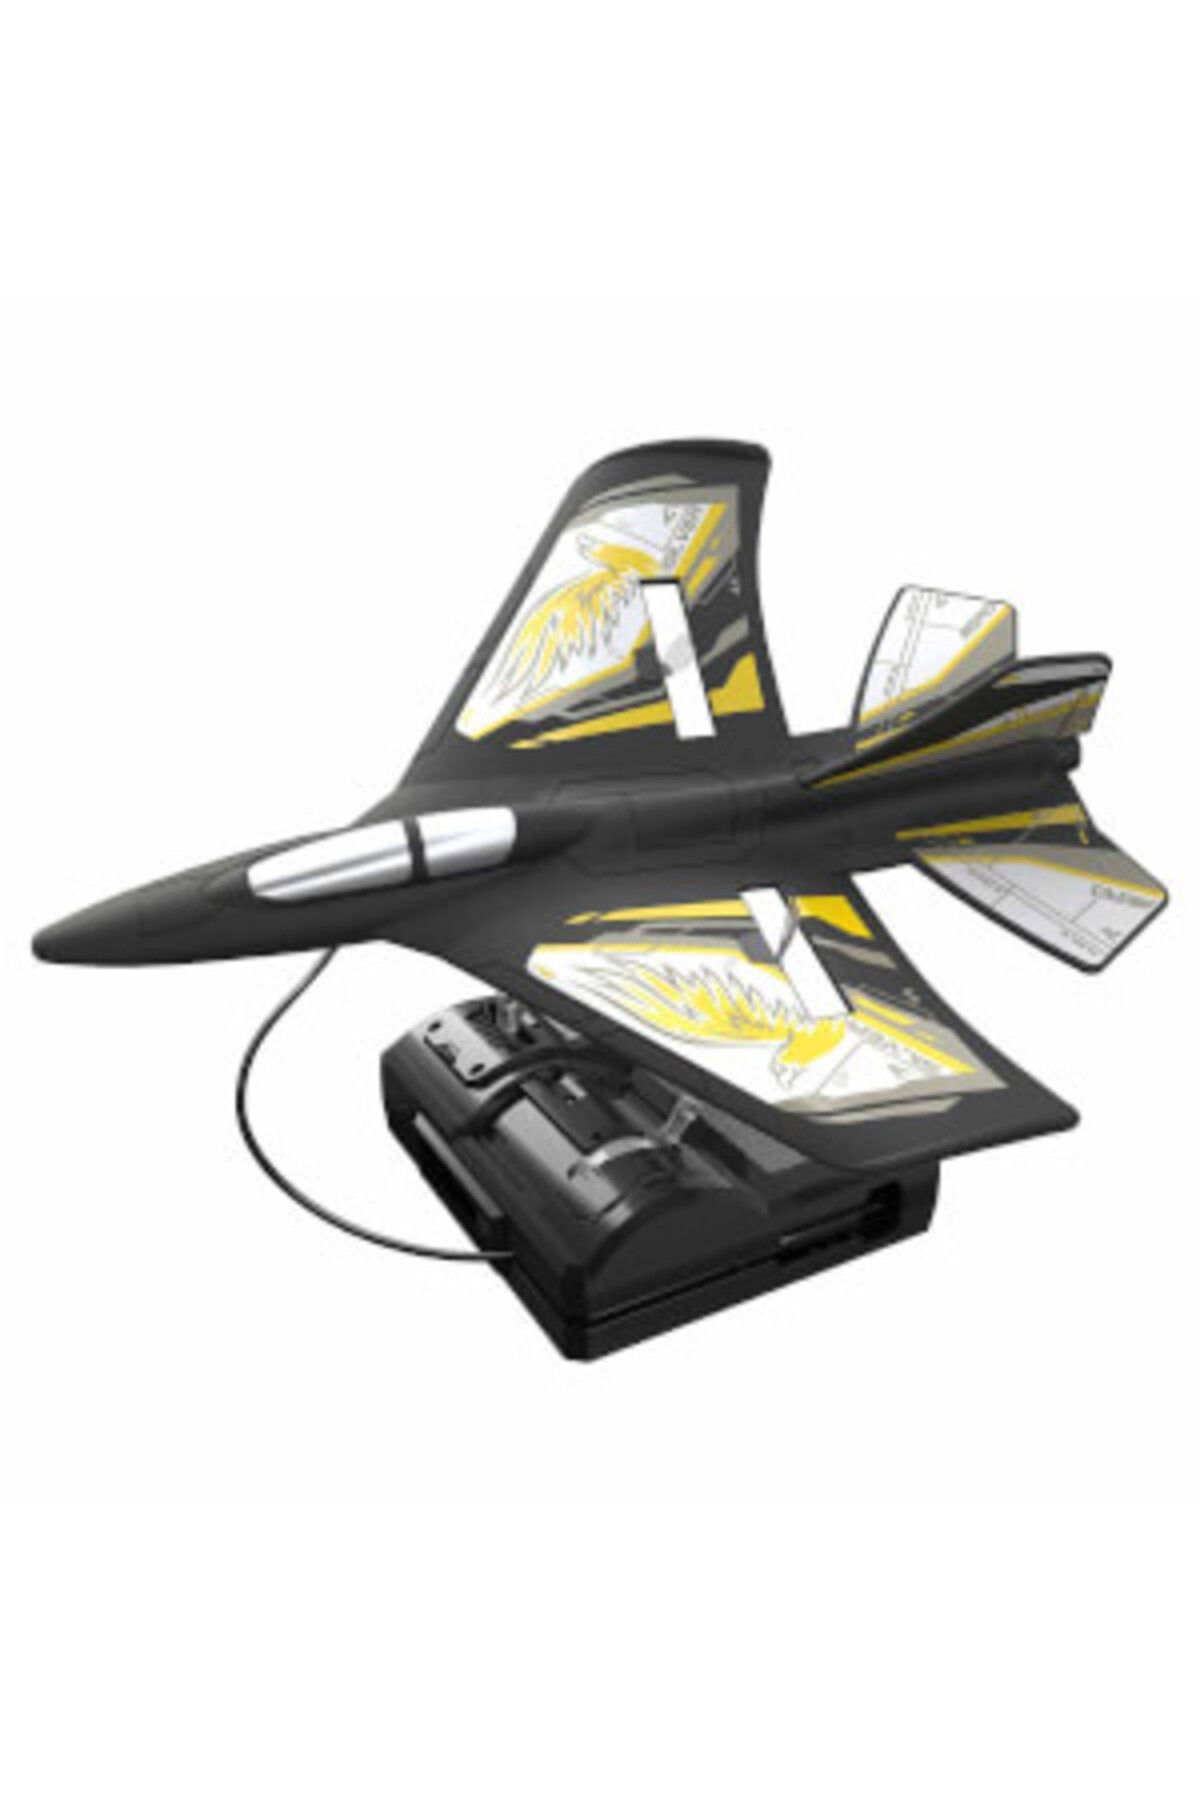 Silverlit ( OYUNCAK ) Silverlit Flybotic X-Twin Evo Uzaktan Kumandalı Uçak (Sarı)  (  1  ADET  )